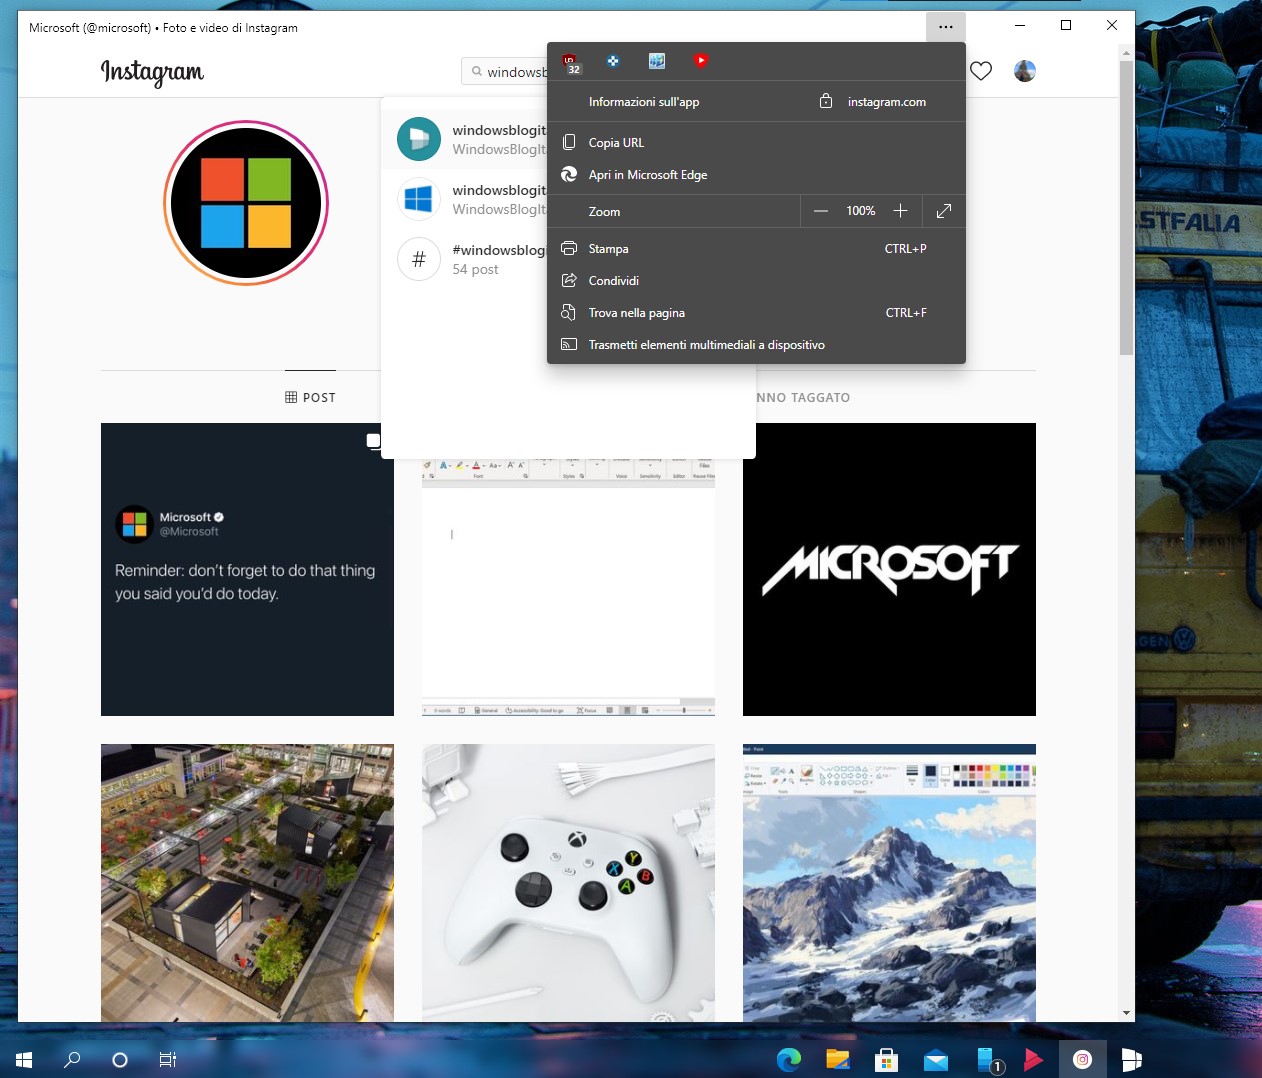 Instagram per Windows 10 - Nuova PWA basata su Edge